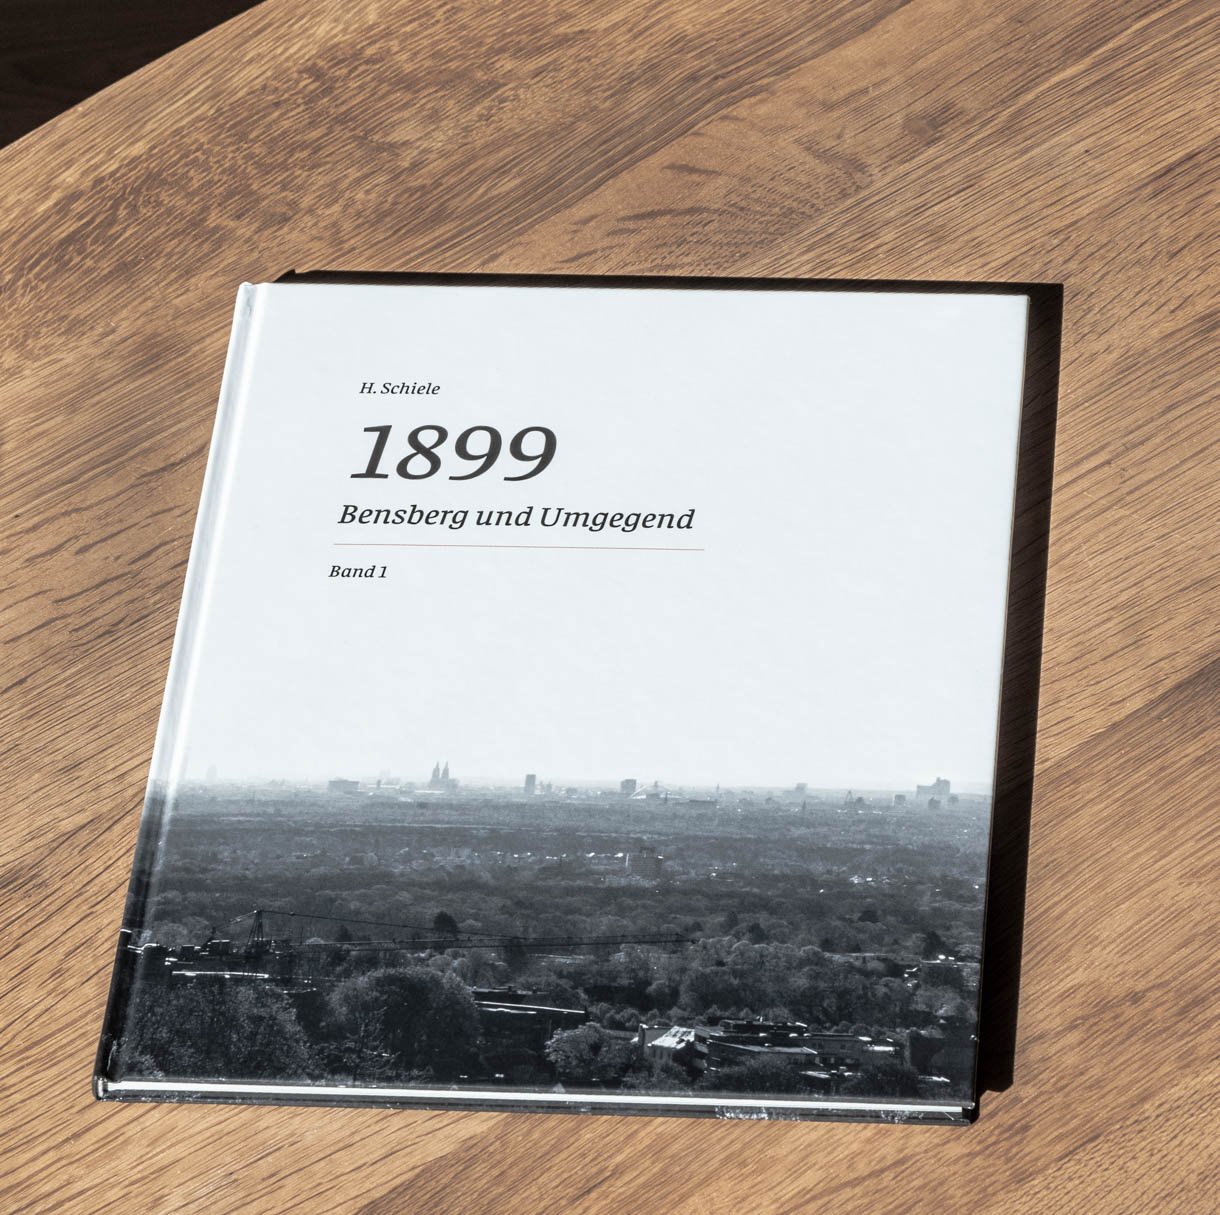 H.Schiele: 1899 - Bensberg und Umgegend, Band 1, Titelbild